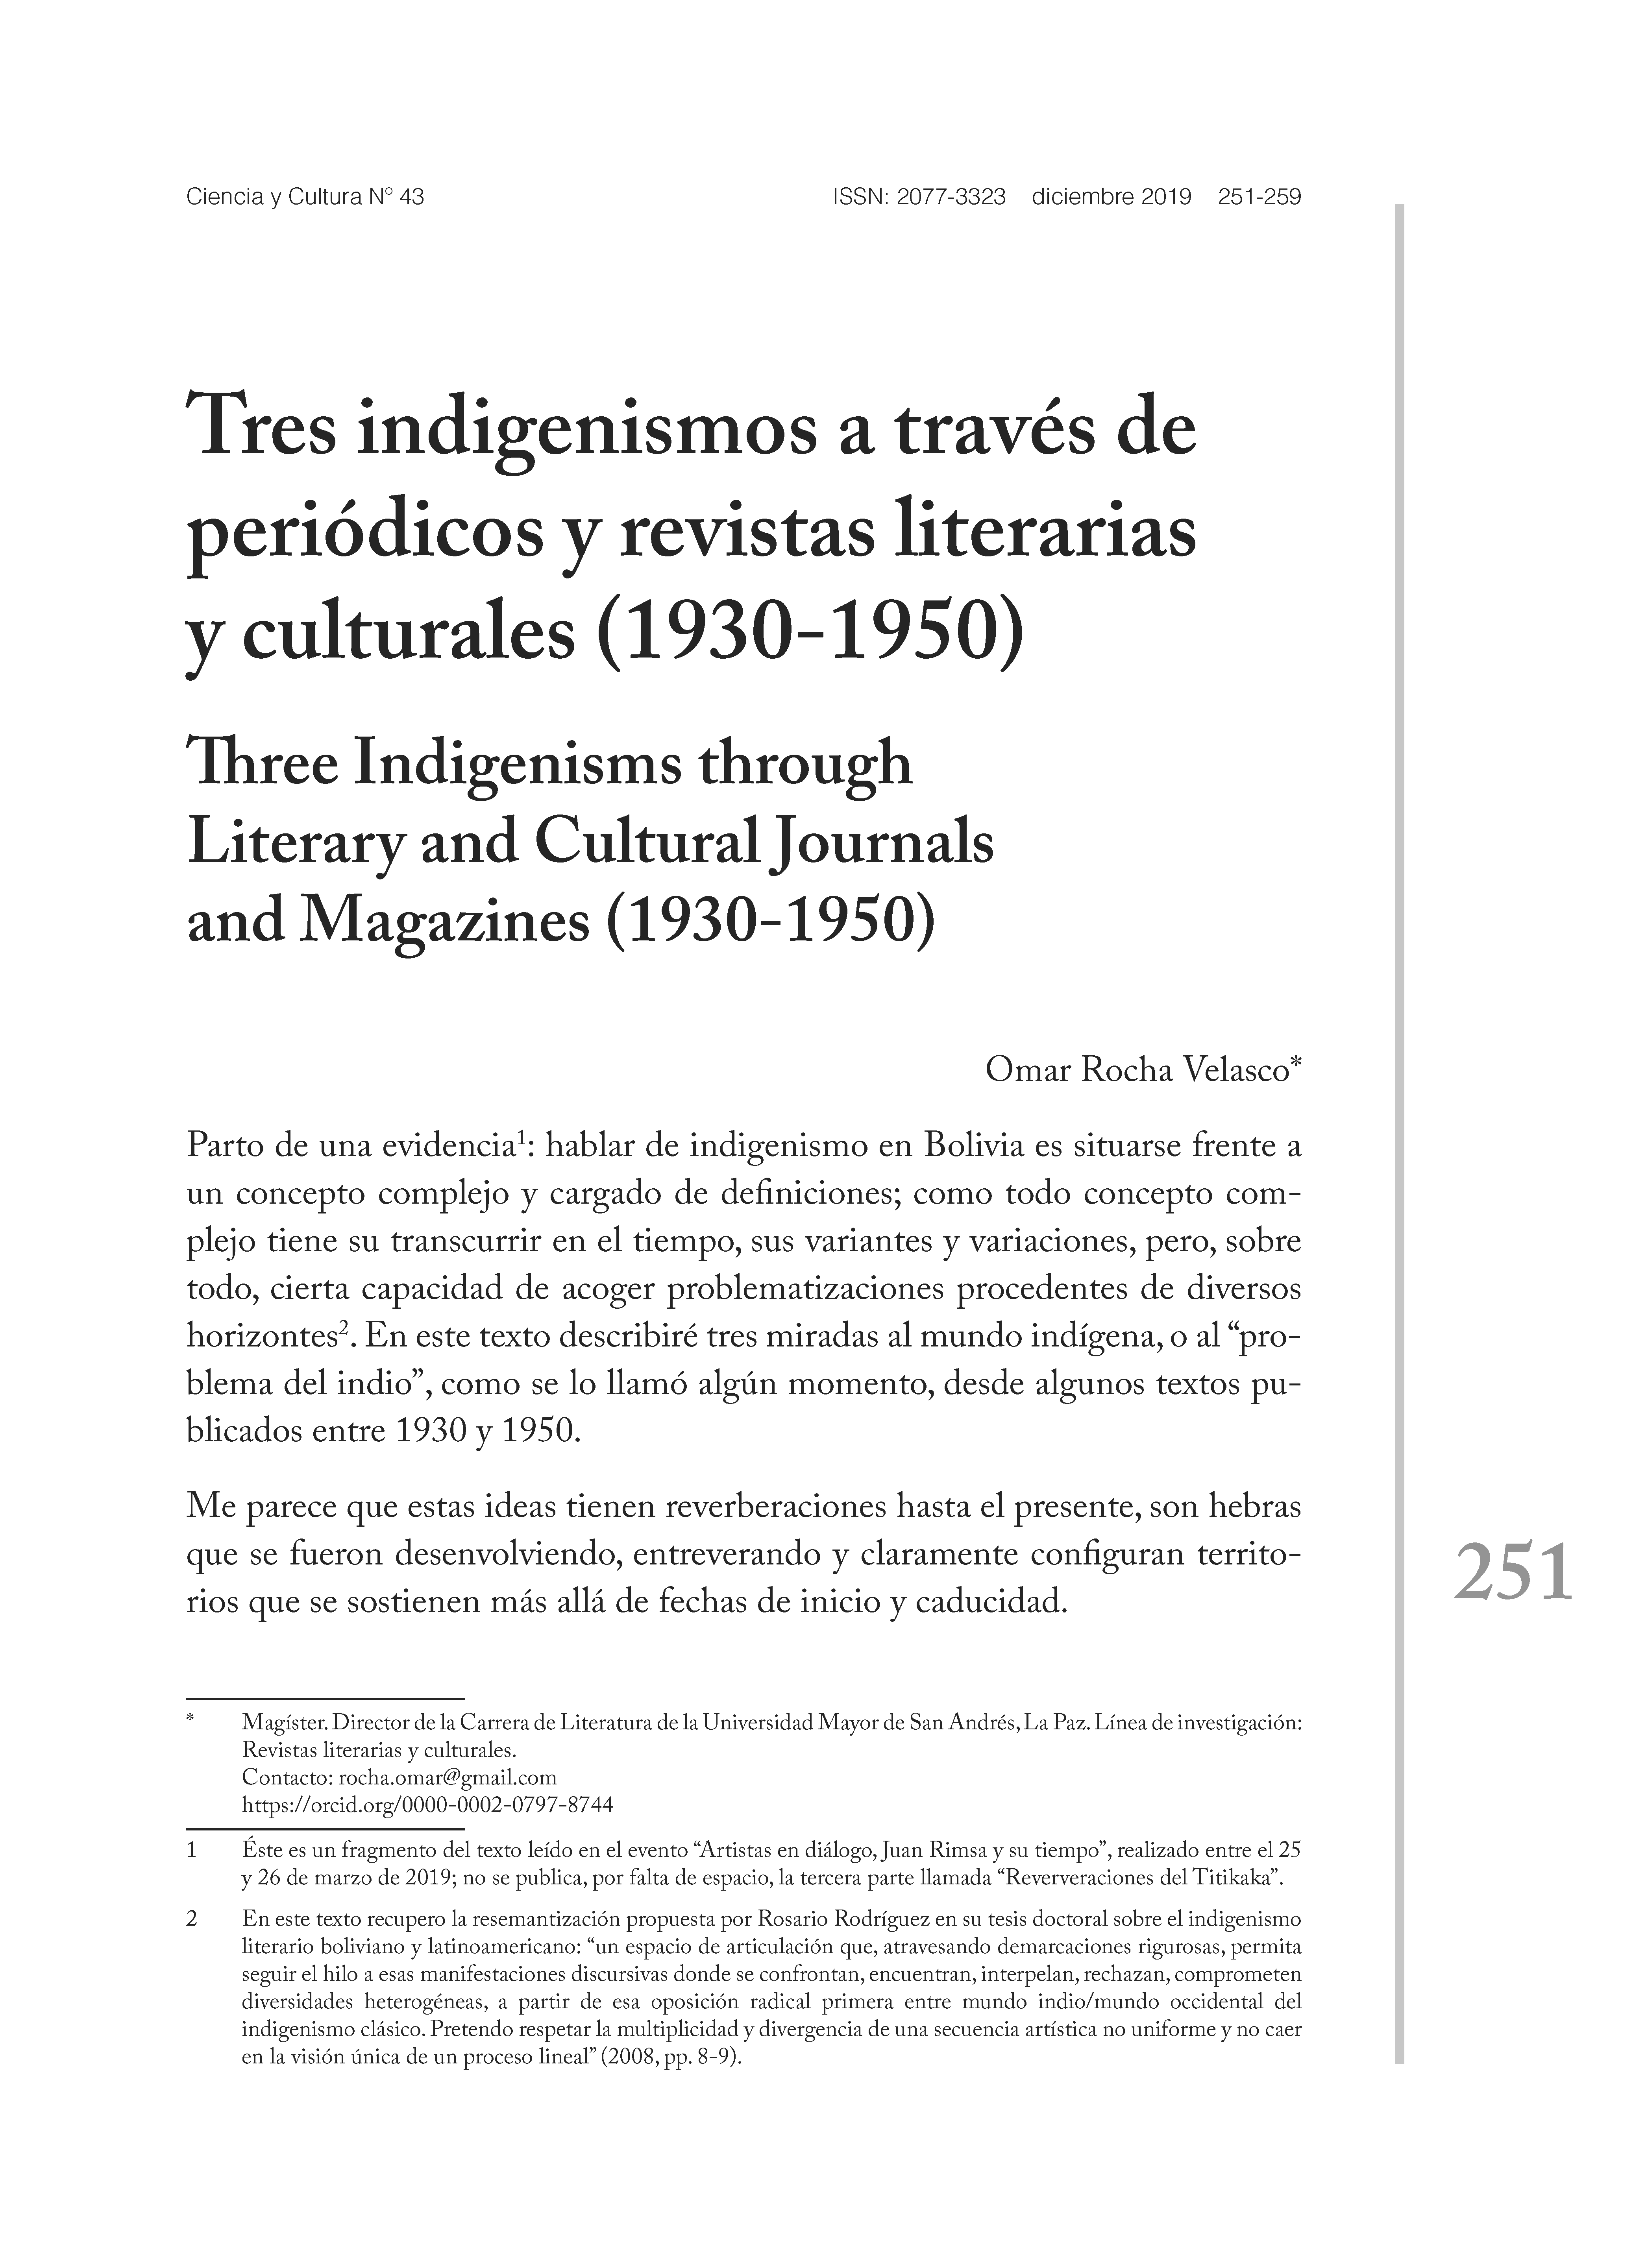 Tres indigenismos a través de periódicos y revistas literarias y culturales (1930-1950)